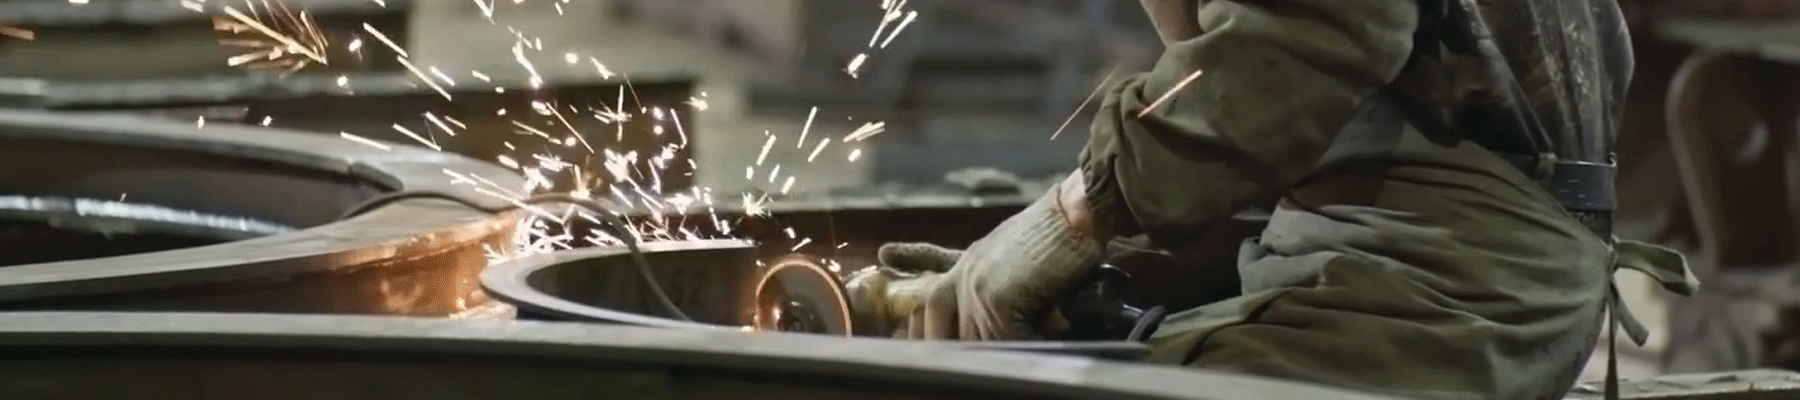 Man grinding metal, polishing rough edges